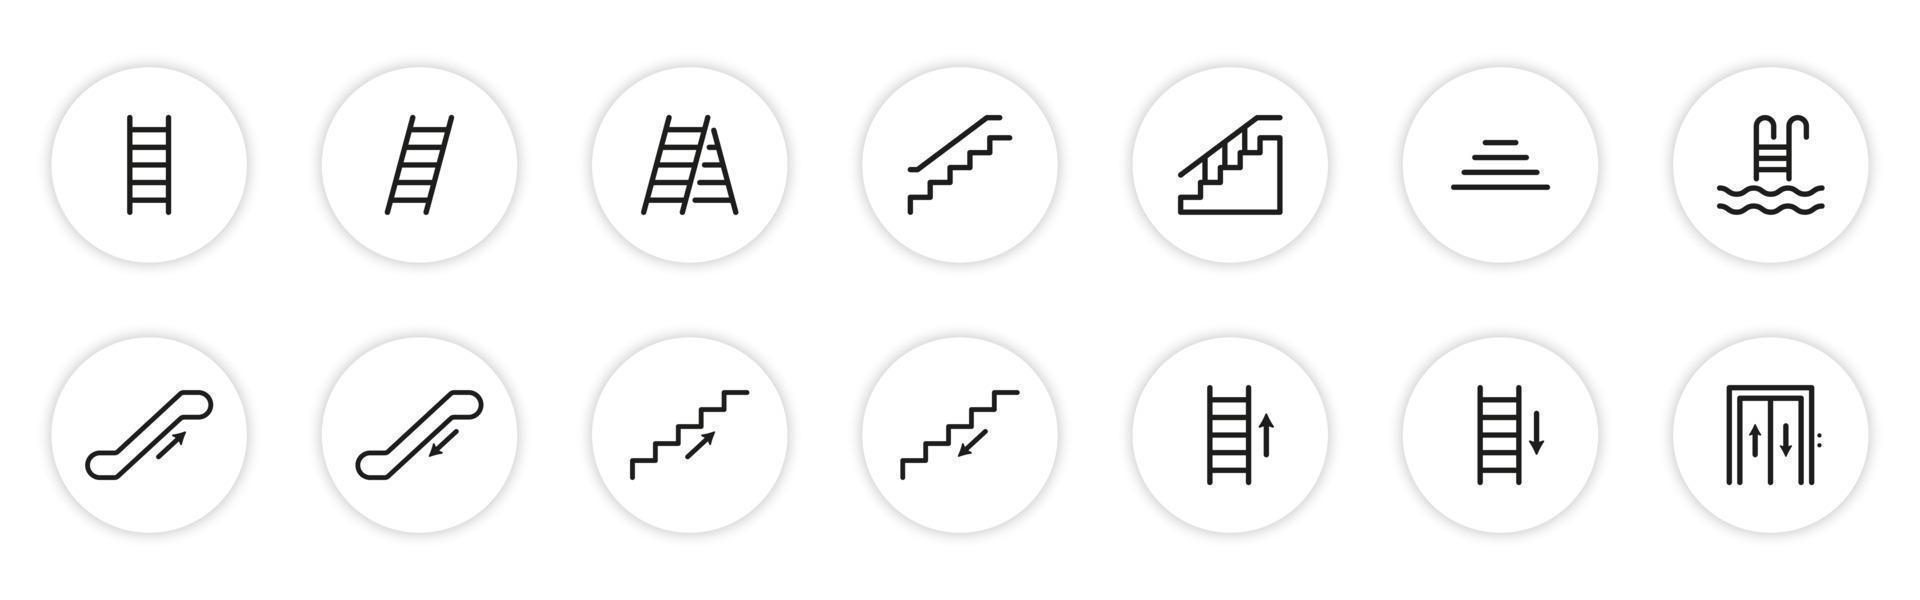 conjunto de icono de línea de escaleras. pictograma lineal de escaleras. subir o bajar escalones. escalera, ascensor, escalera, escalera mecánica, icono de contorno de escalera de piscina. ilustración vectorial aislada. vector